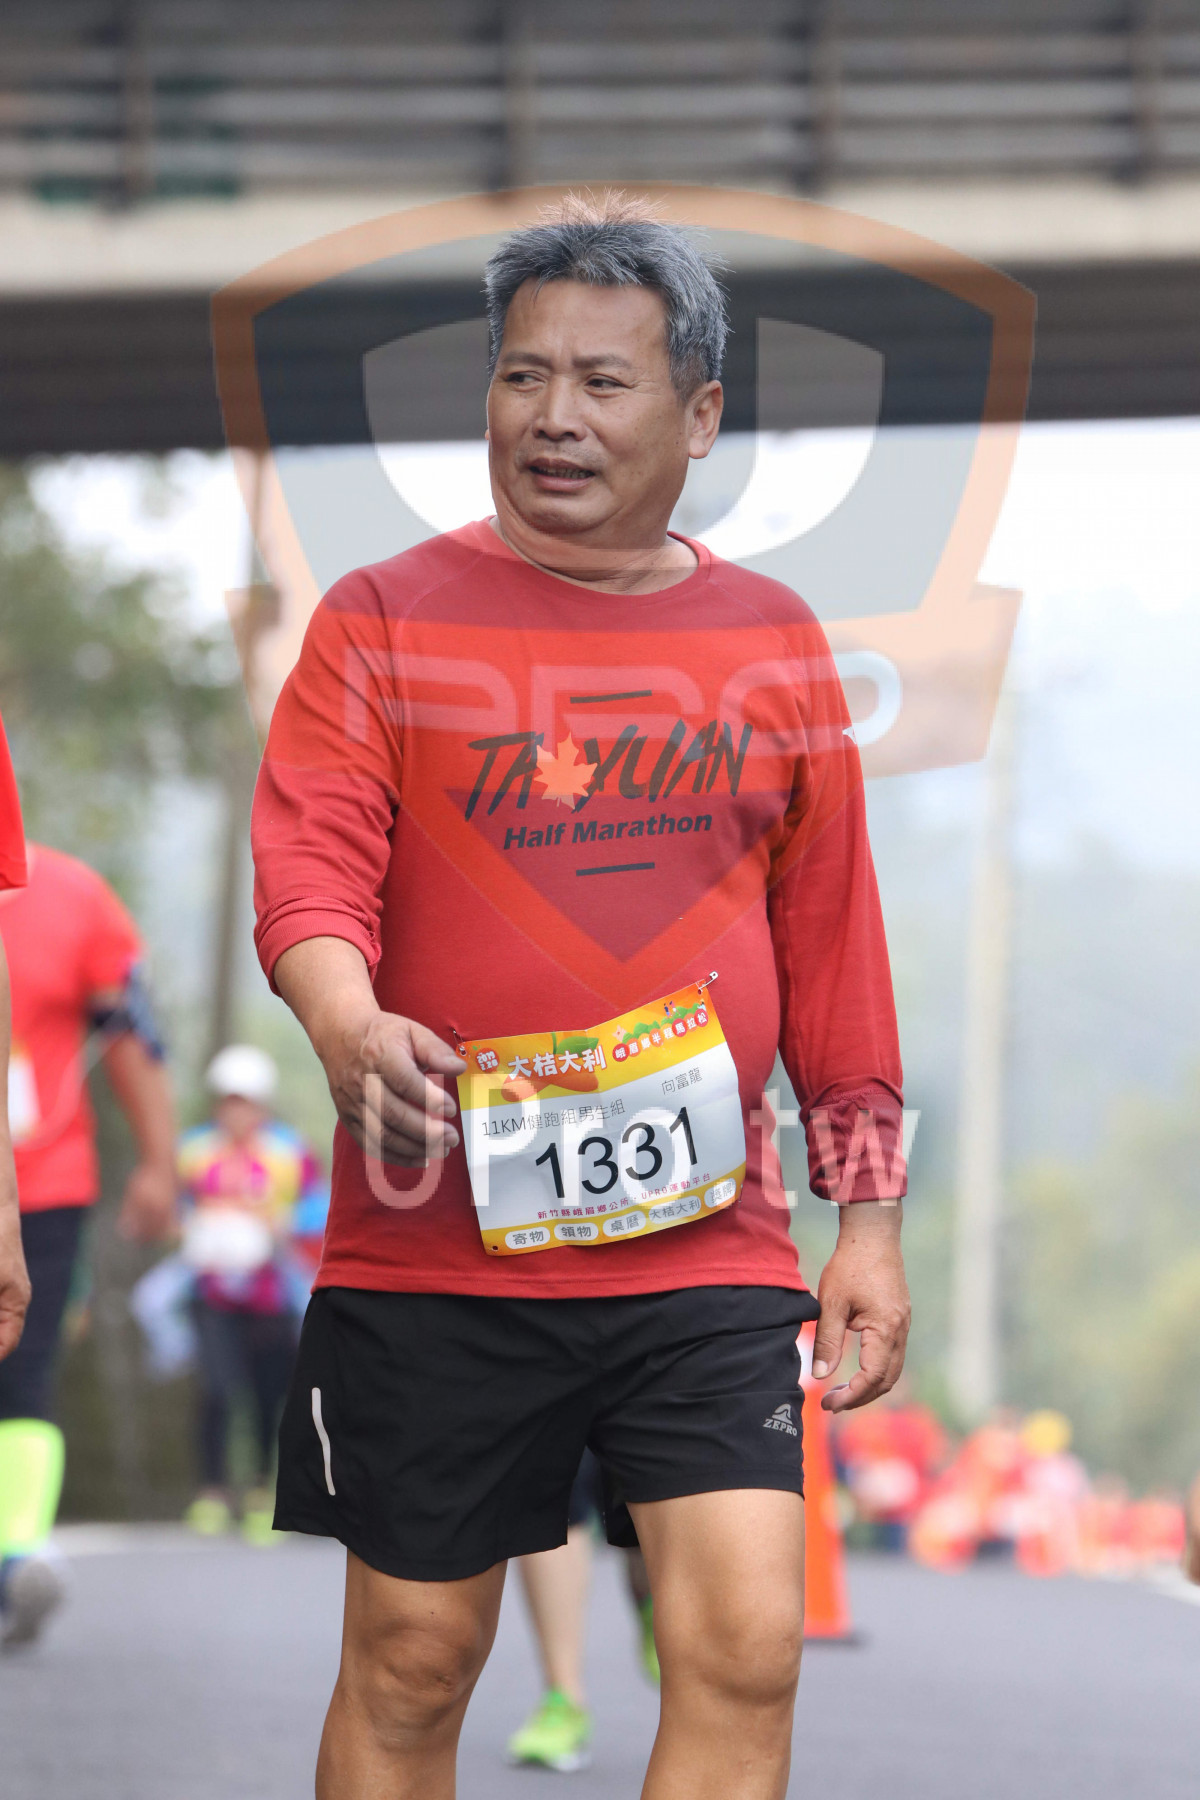 Half Marathon,,11KM,1331|